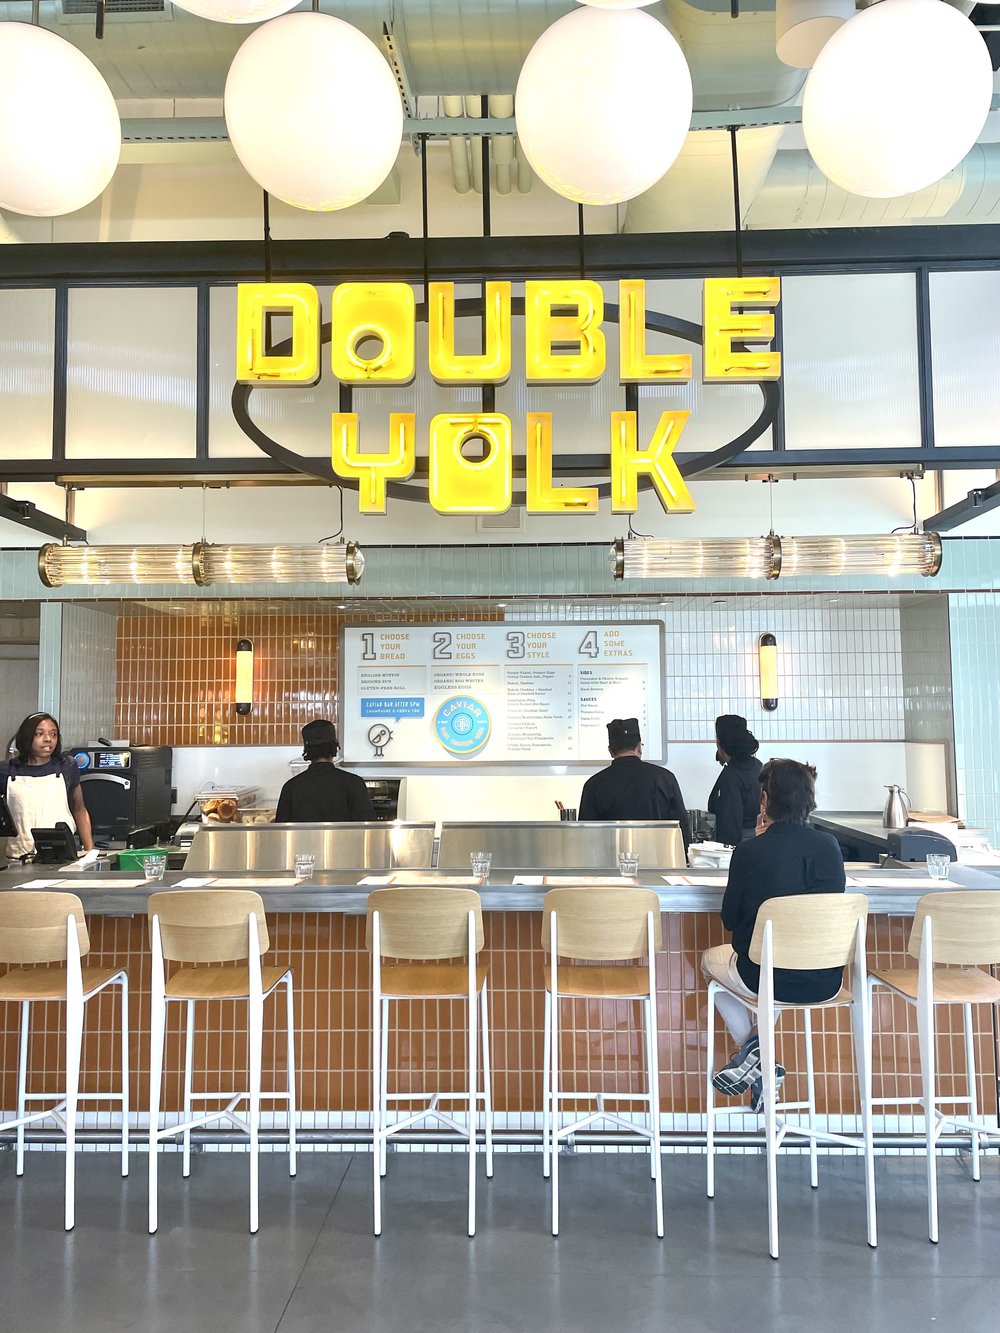 Breakfast Booth "Double Yolk"